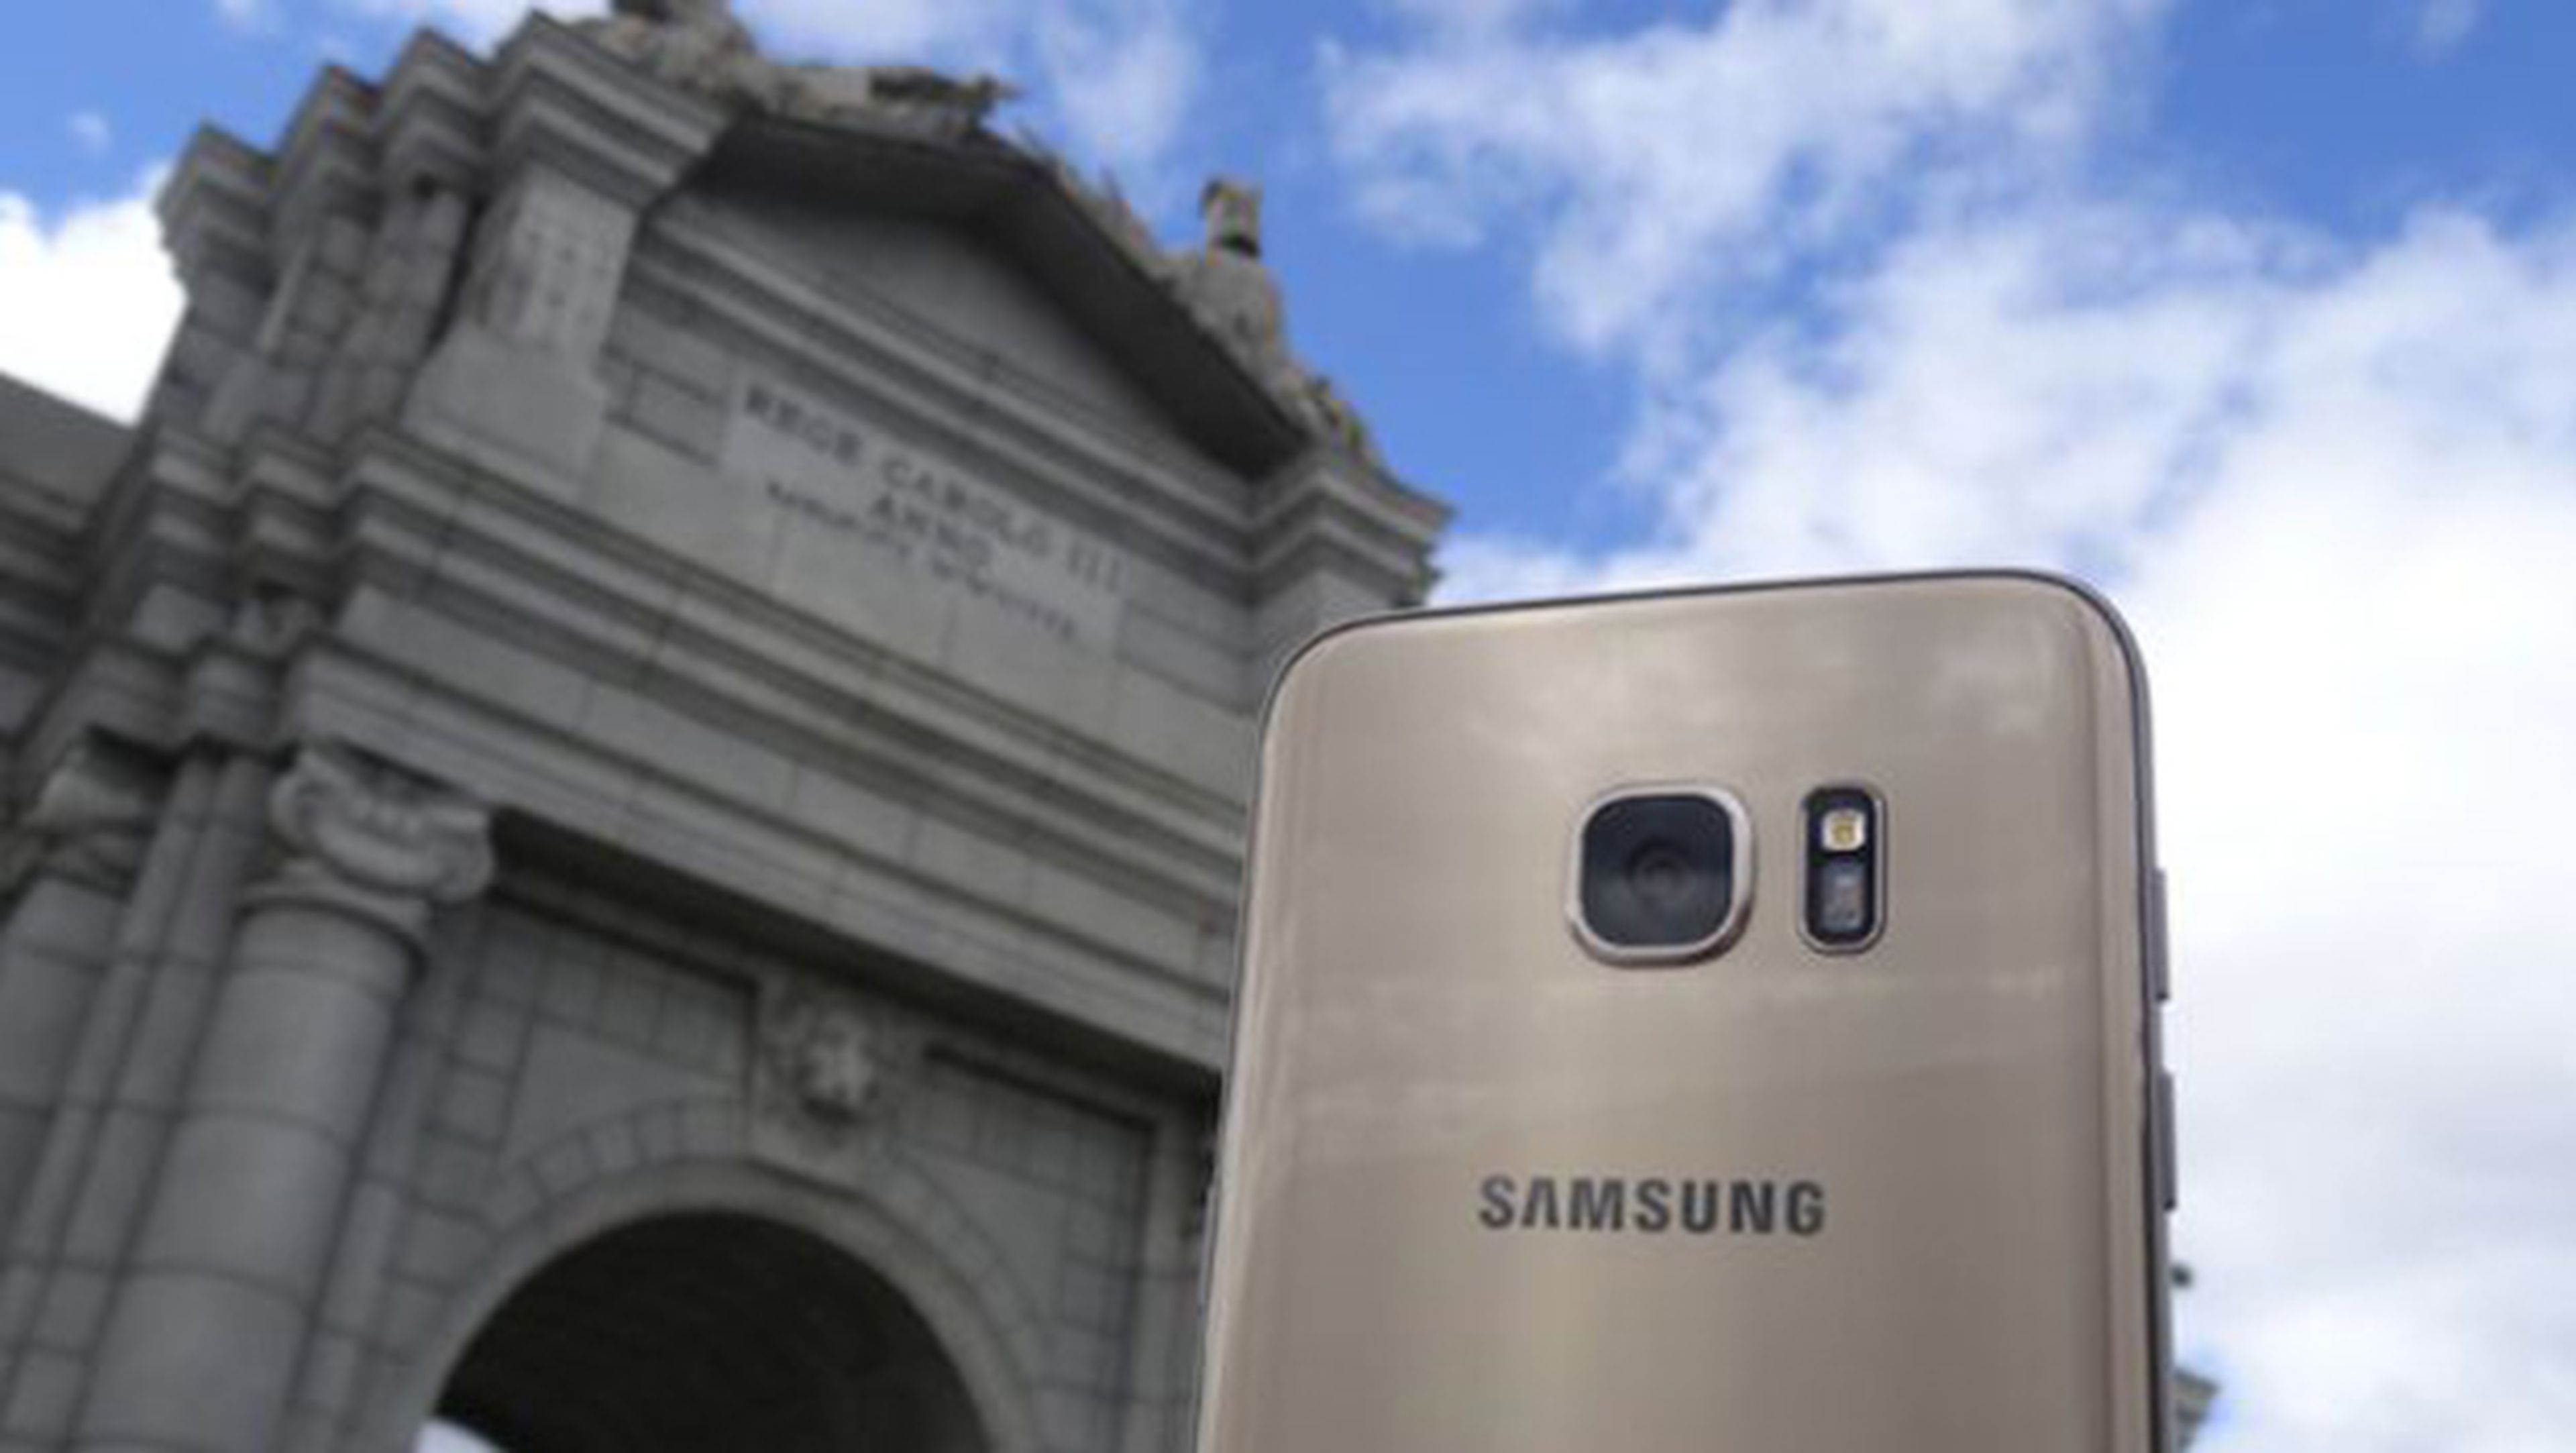 Logran rootear el Samsung Galaxy S7 con Snapdragon 820